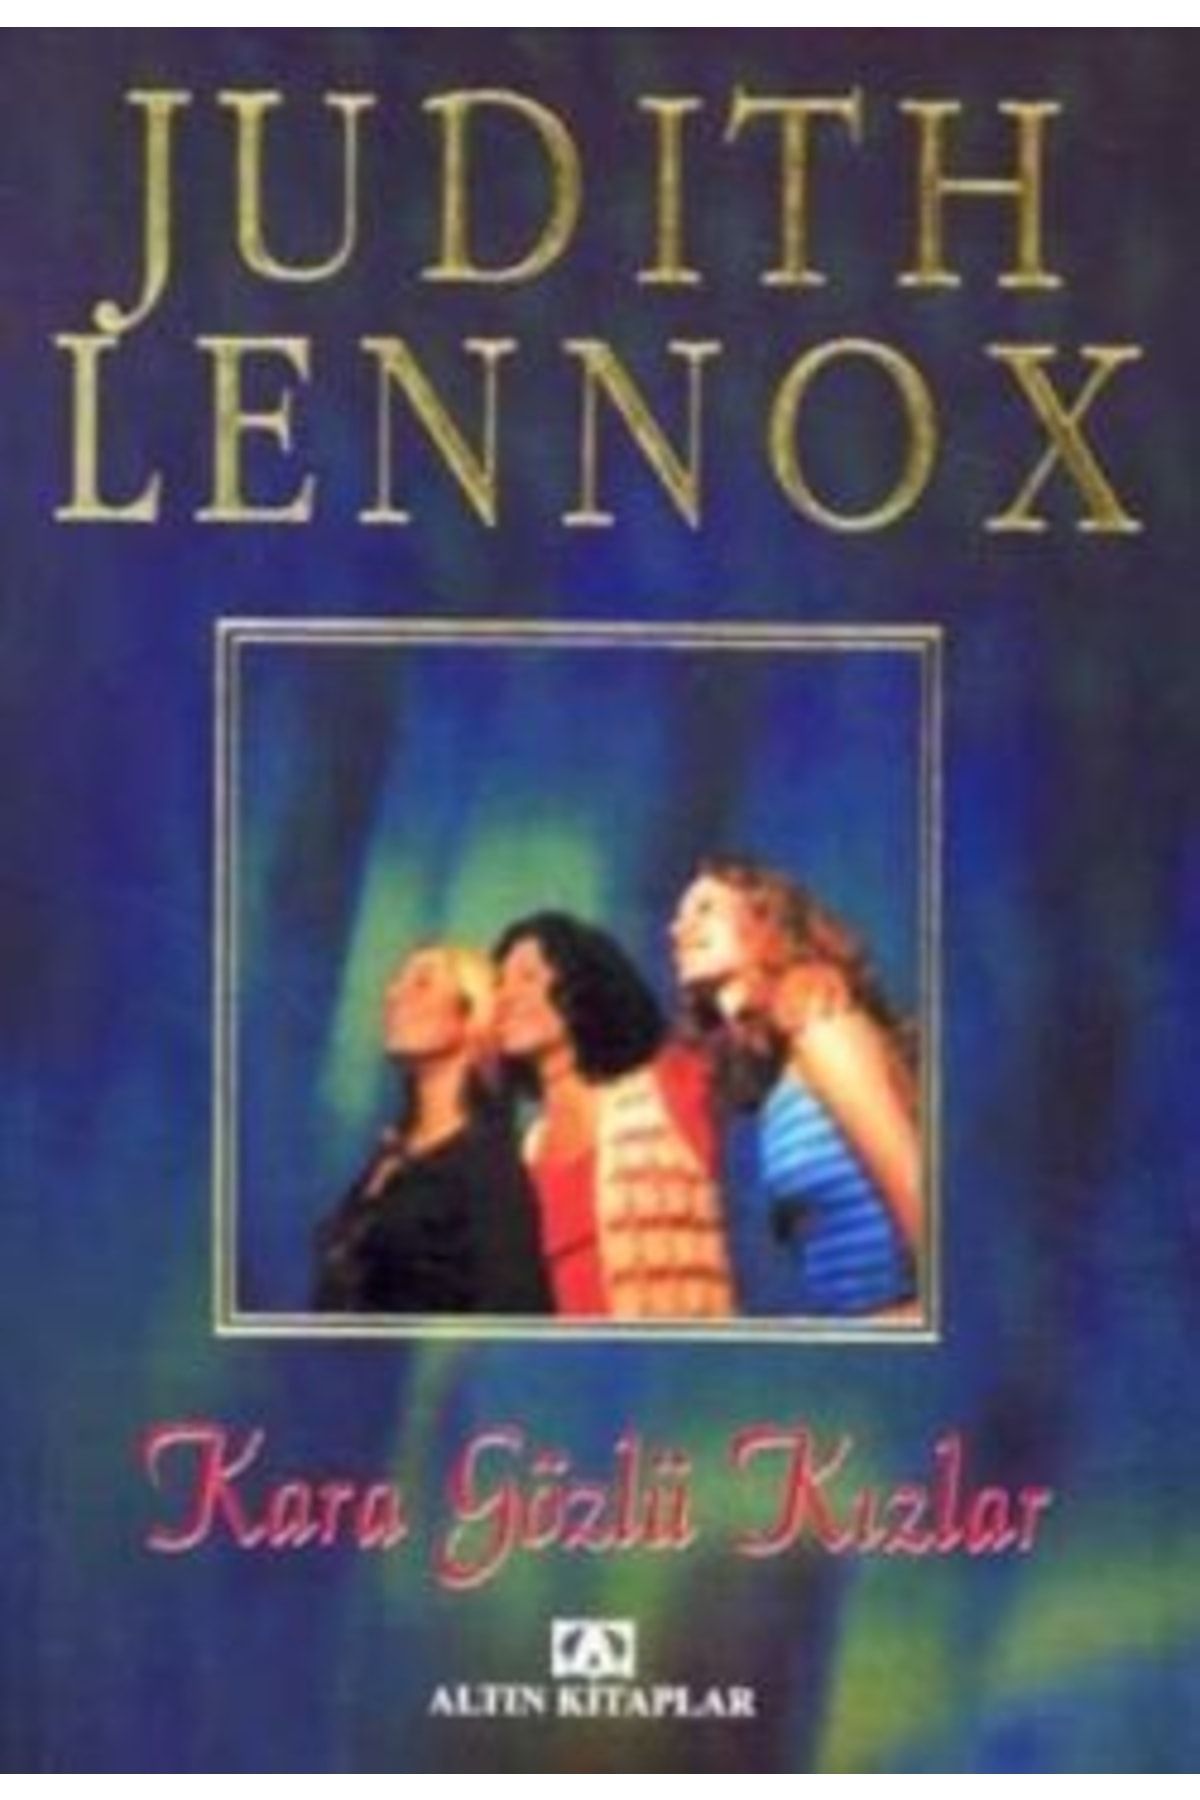 Altın Kitaplar Kara Gözlü Kızlar Judith Lennox Altın Kitaplar